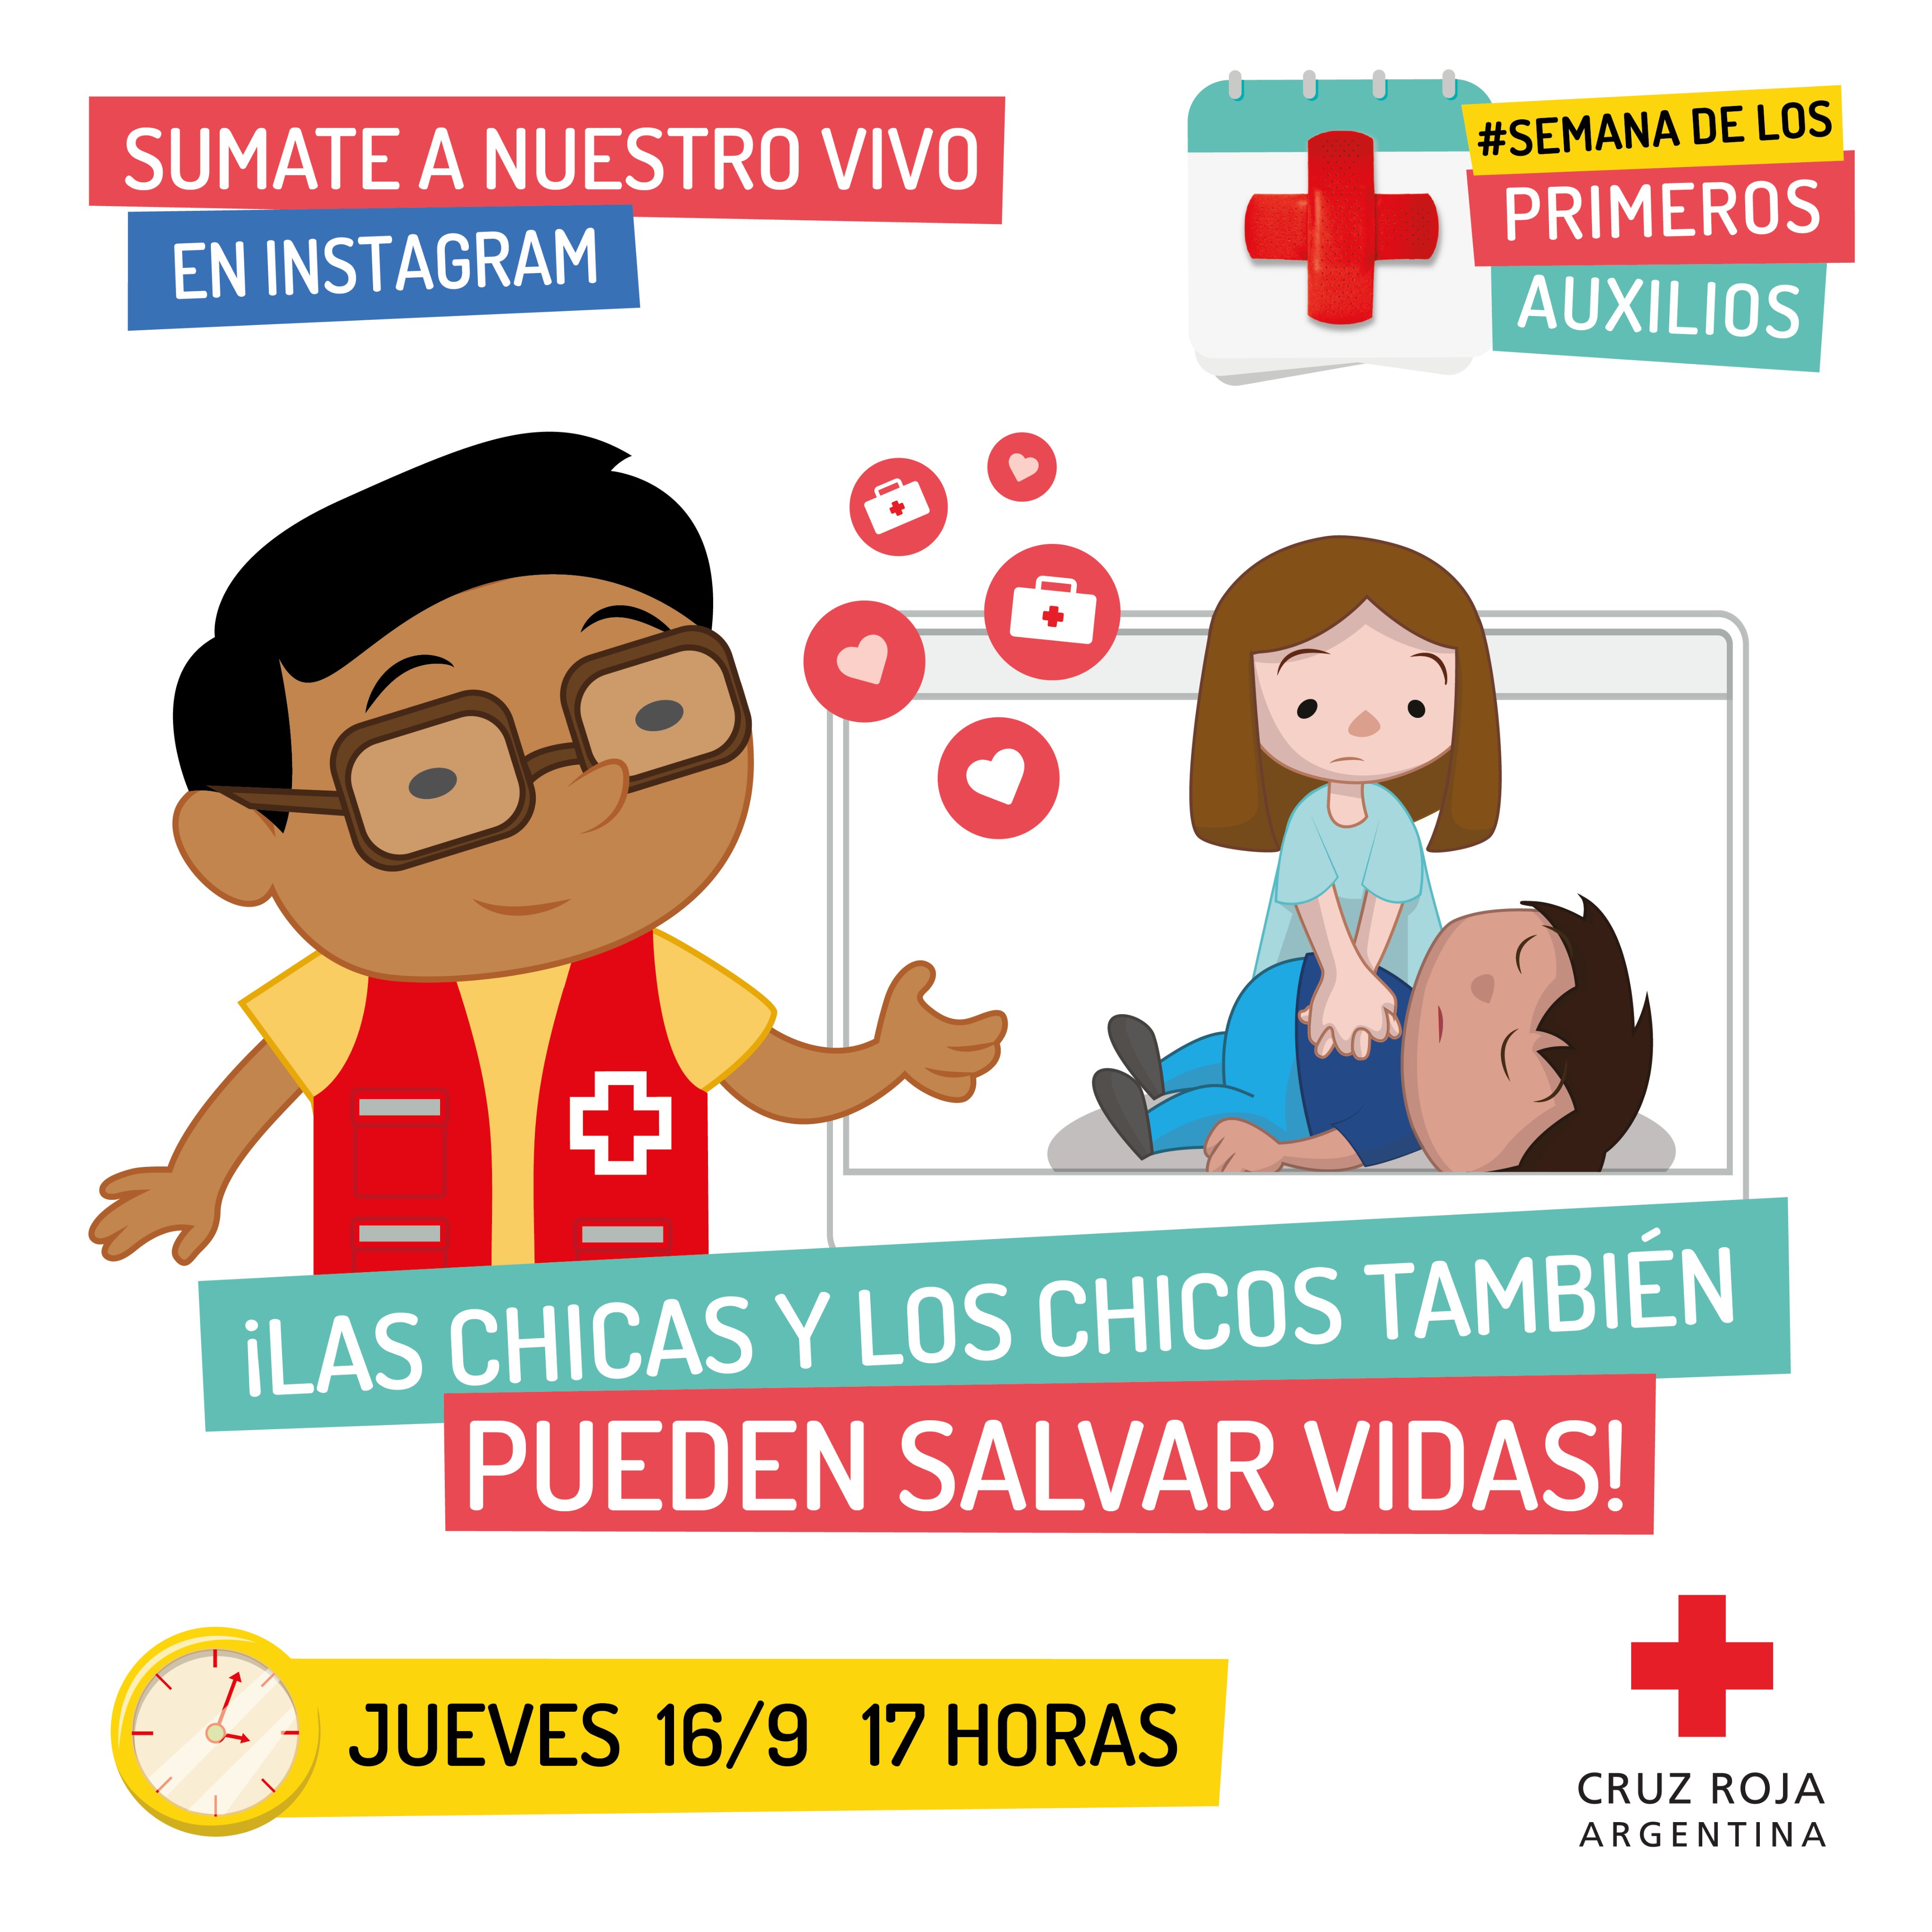 CruzRojaArgentina on Twitter: "Las chicas y chicos también pueden salvar vidas! 💪❤ En la #SemanaDeLosPrimerosAuxilios nuestro voluntariado enseñará en vivo técnicas básicas de Primeros Auxilios niñas, niños y jóvenes. 📅